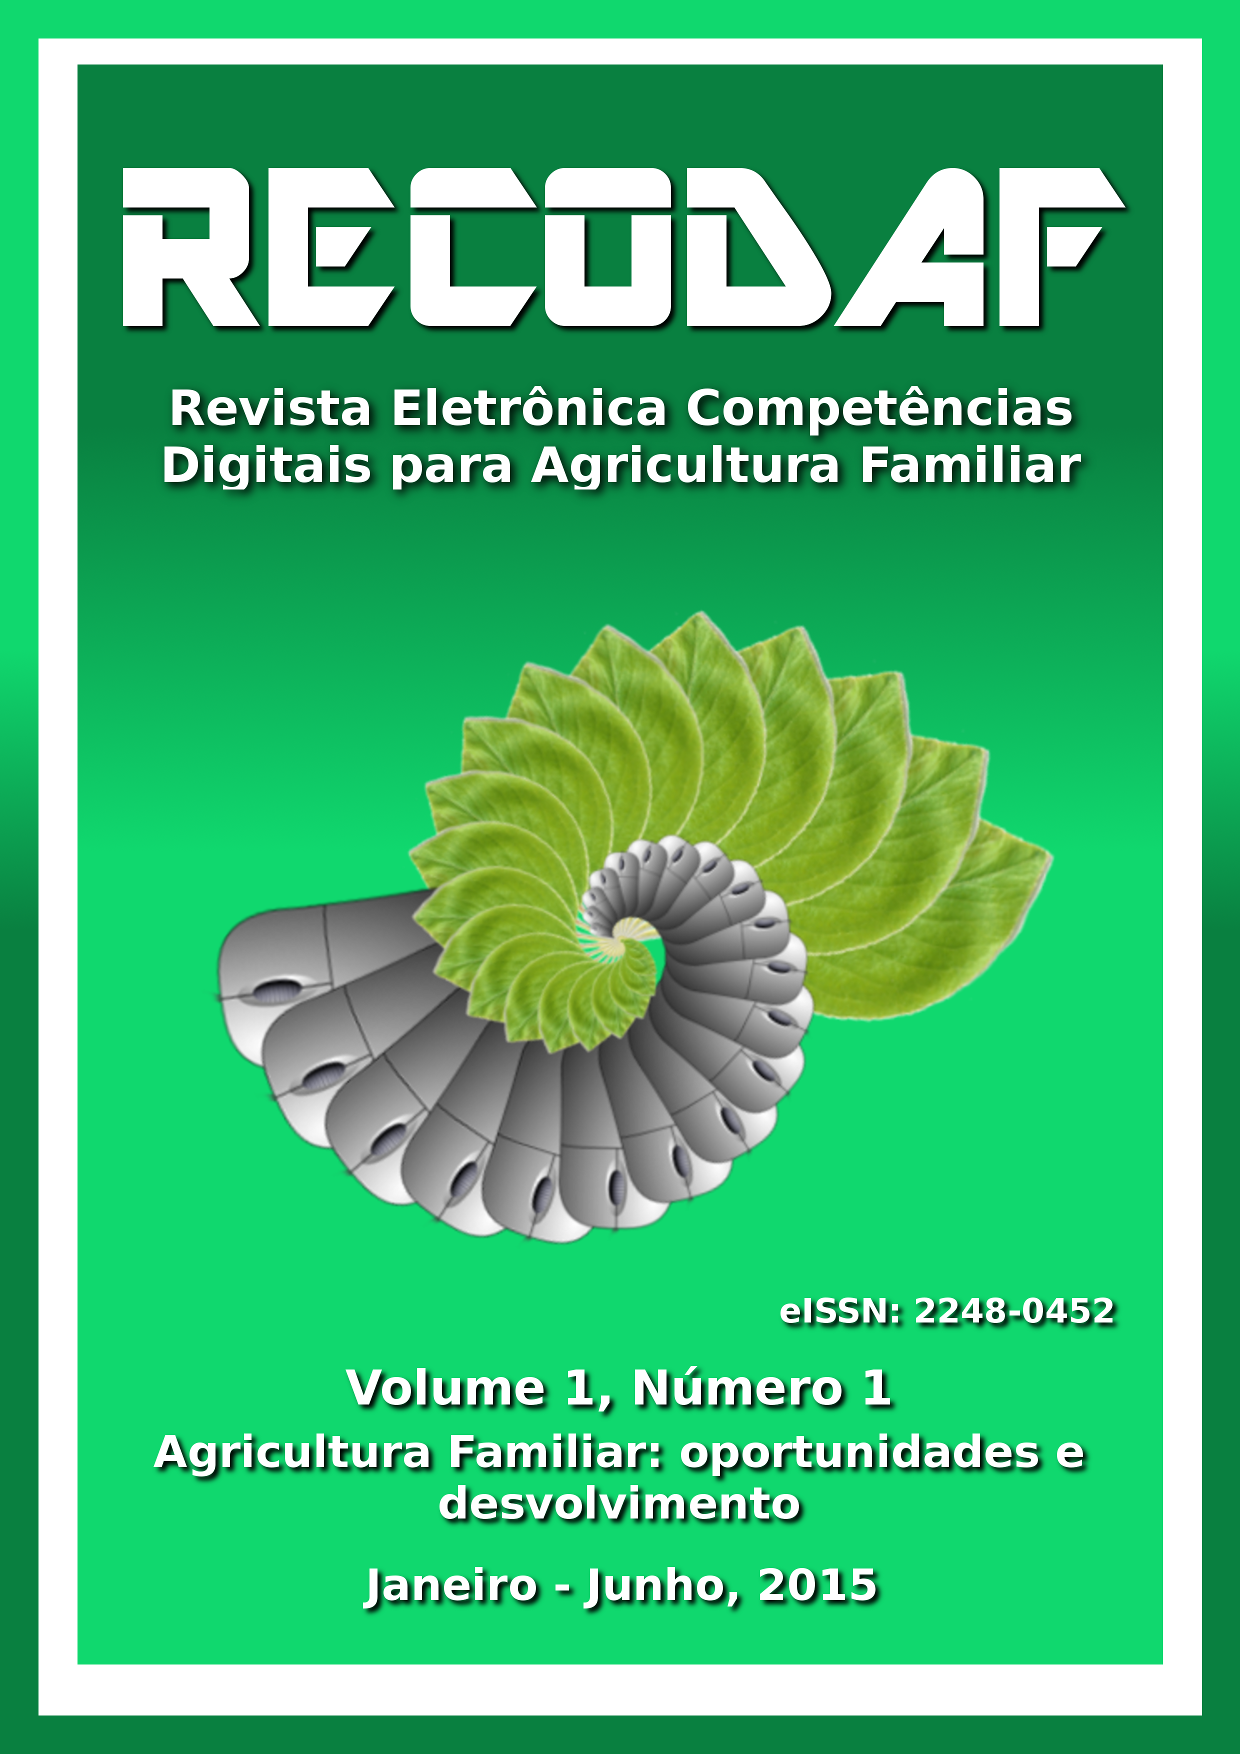 Revista Eletrônica Competências Digitais para Agriculgura Familiar. Tema: "Agricultura Familiar: oportunidades e desenvolvimento"